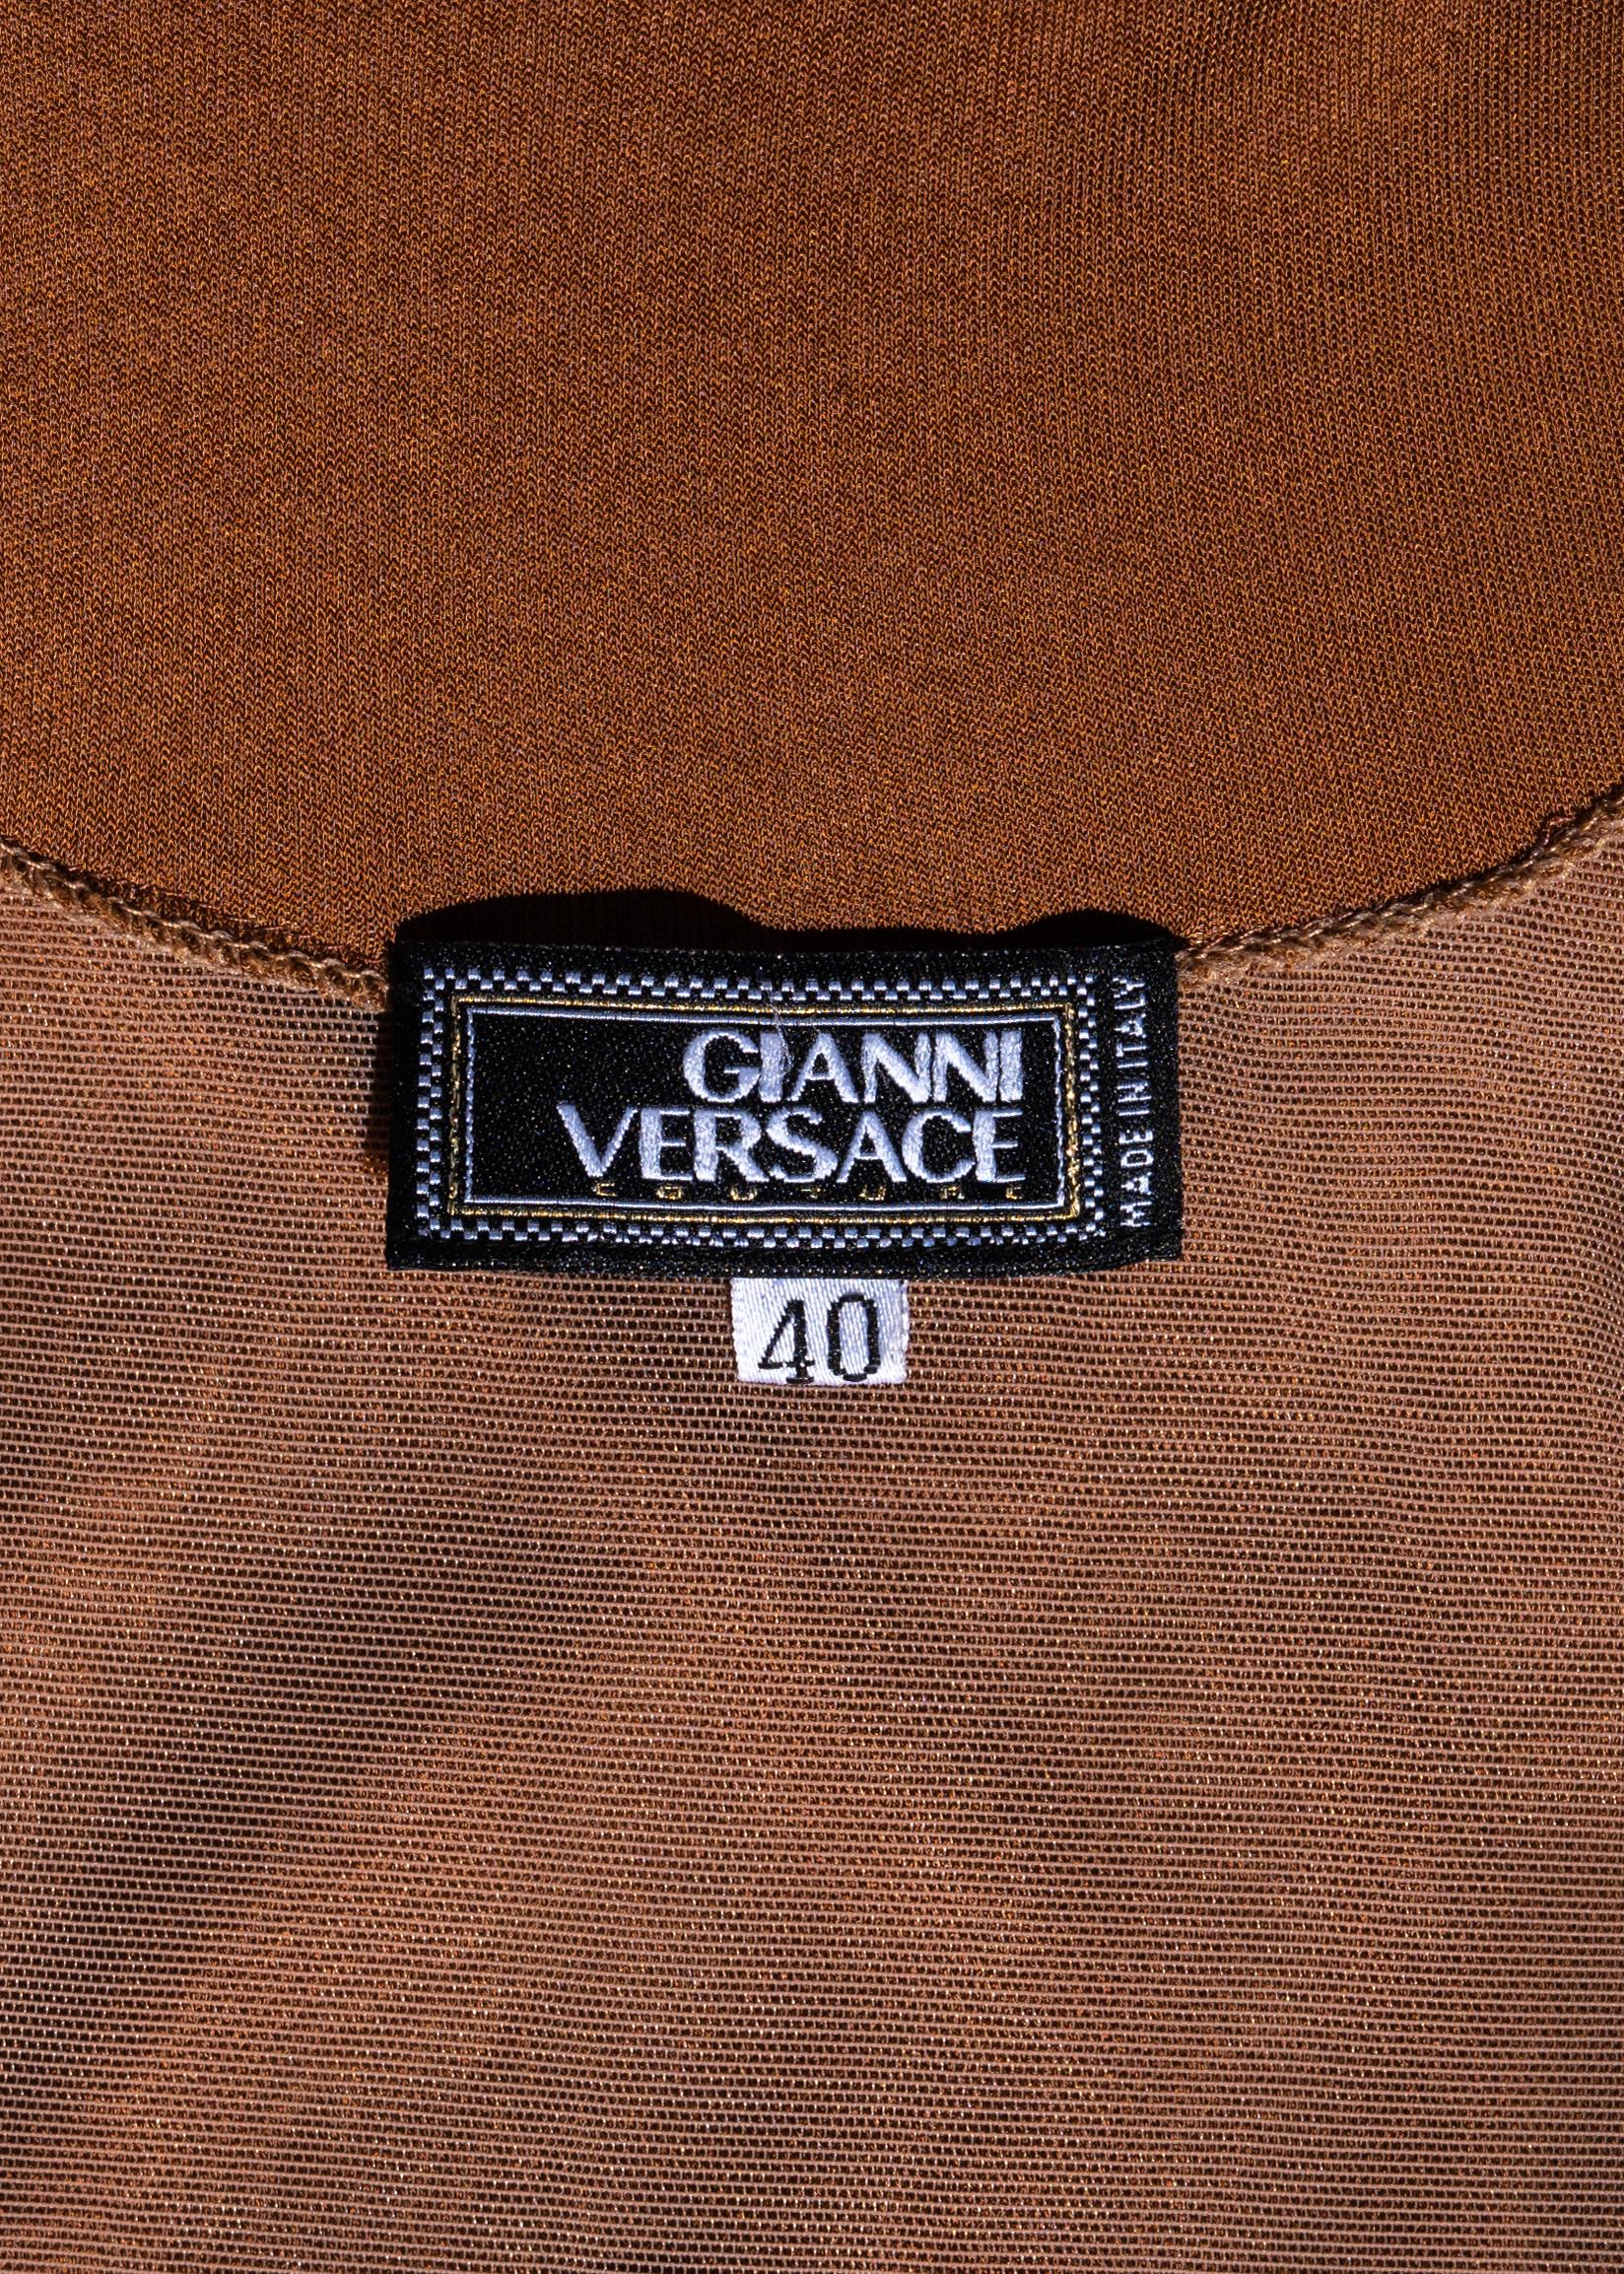 Robe du soir en cuir brun et jersey de viscose de Gianni Versace, saison 2001 en vente 4